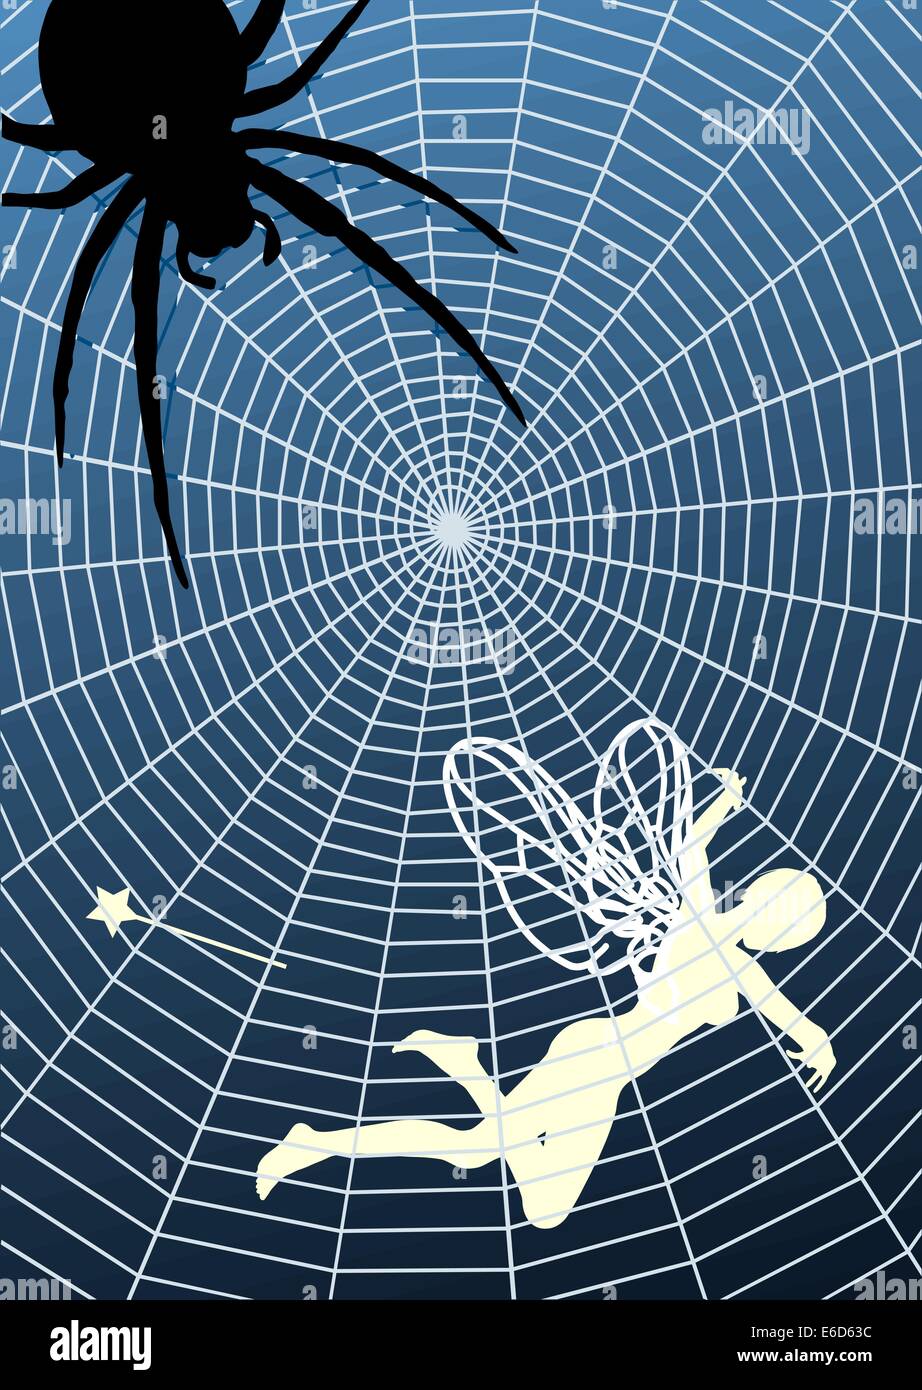 Illustration vectorielle modifiable d'une fée pris dans une toile d'araignée Illustration de Vecteur